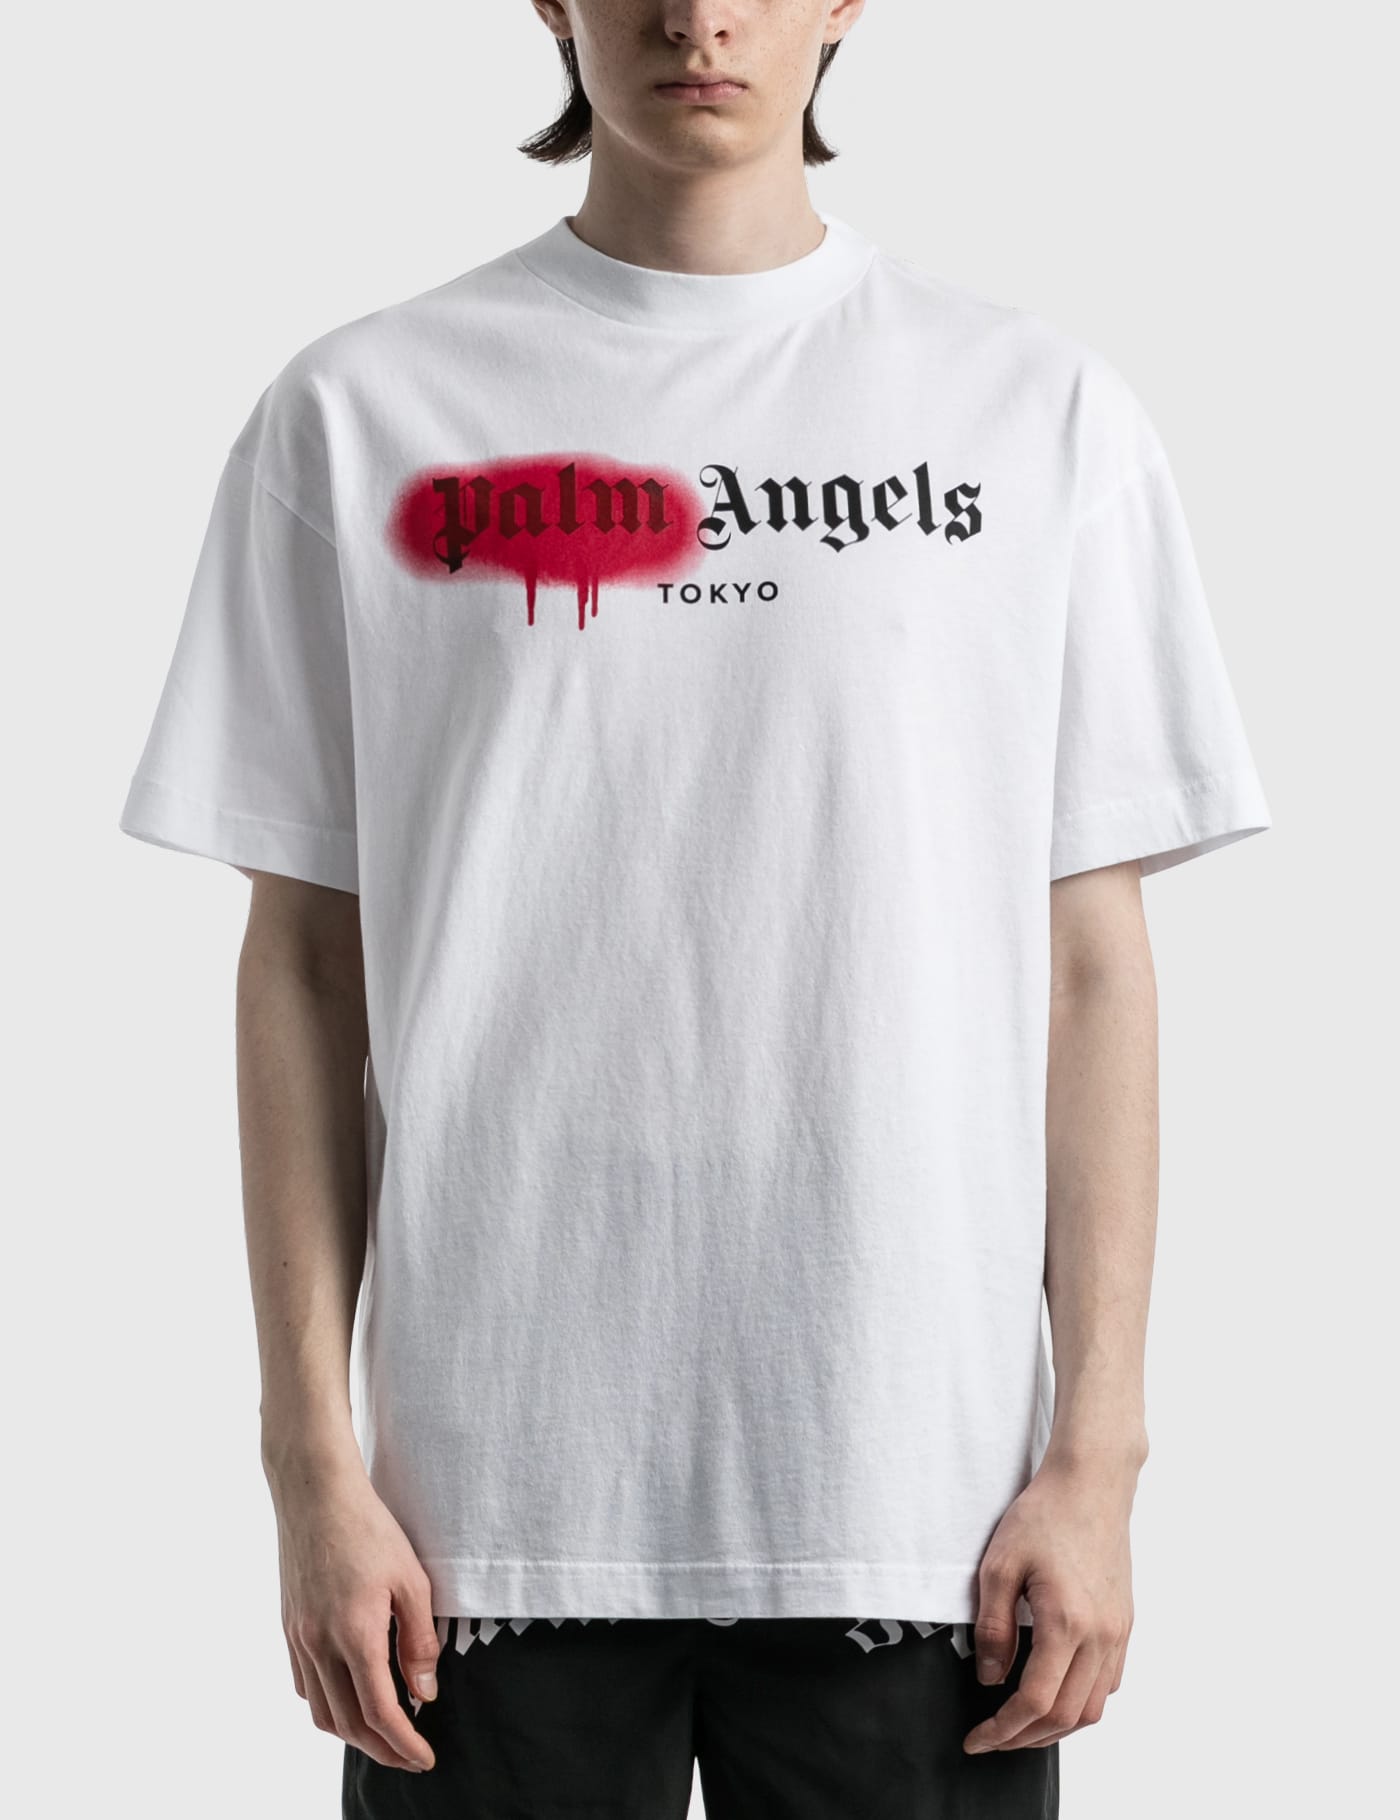 Palm Angels - Tokyo Sprayed T-shirt | HBX - ハイプビースト ...